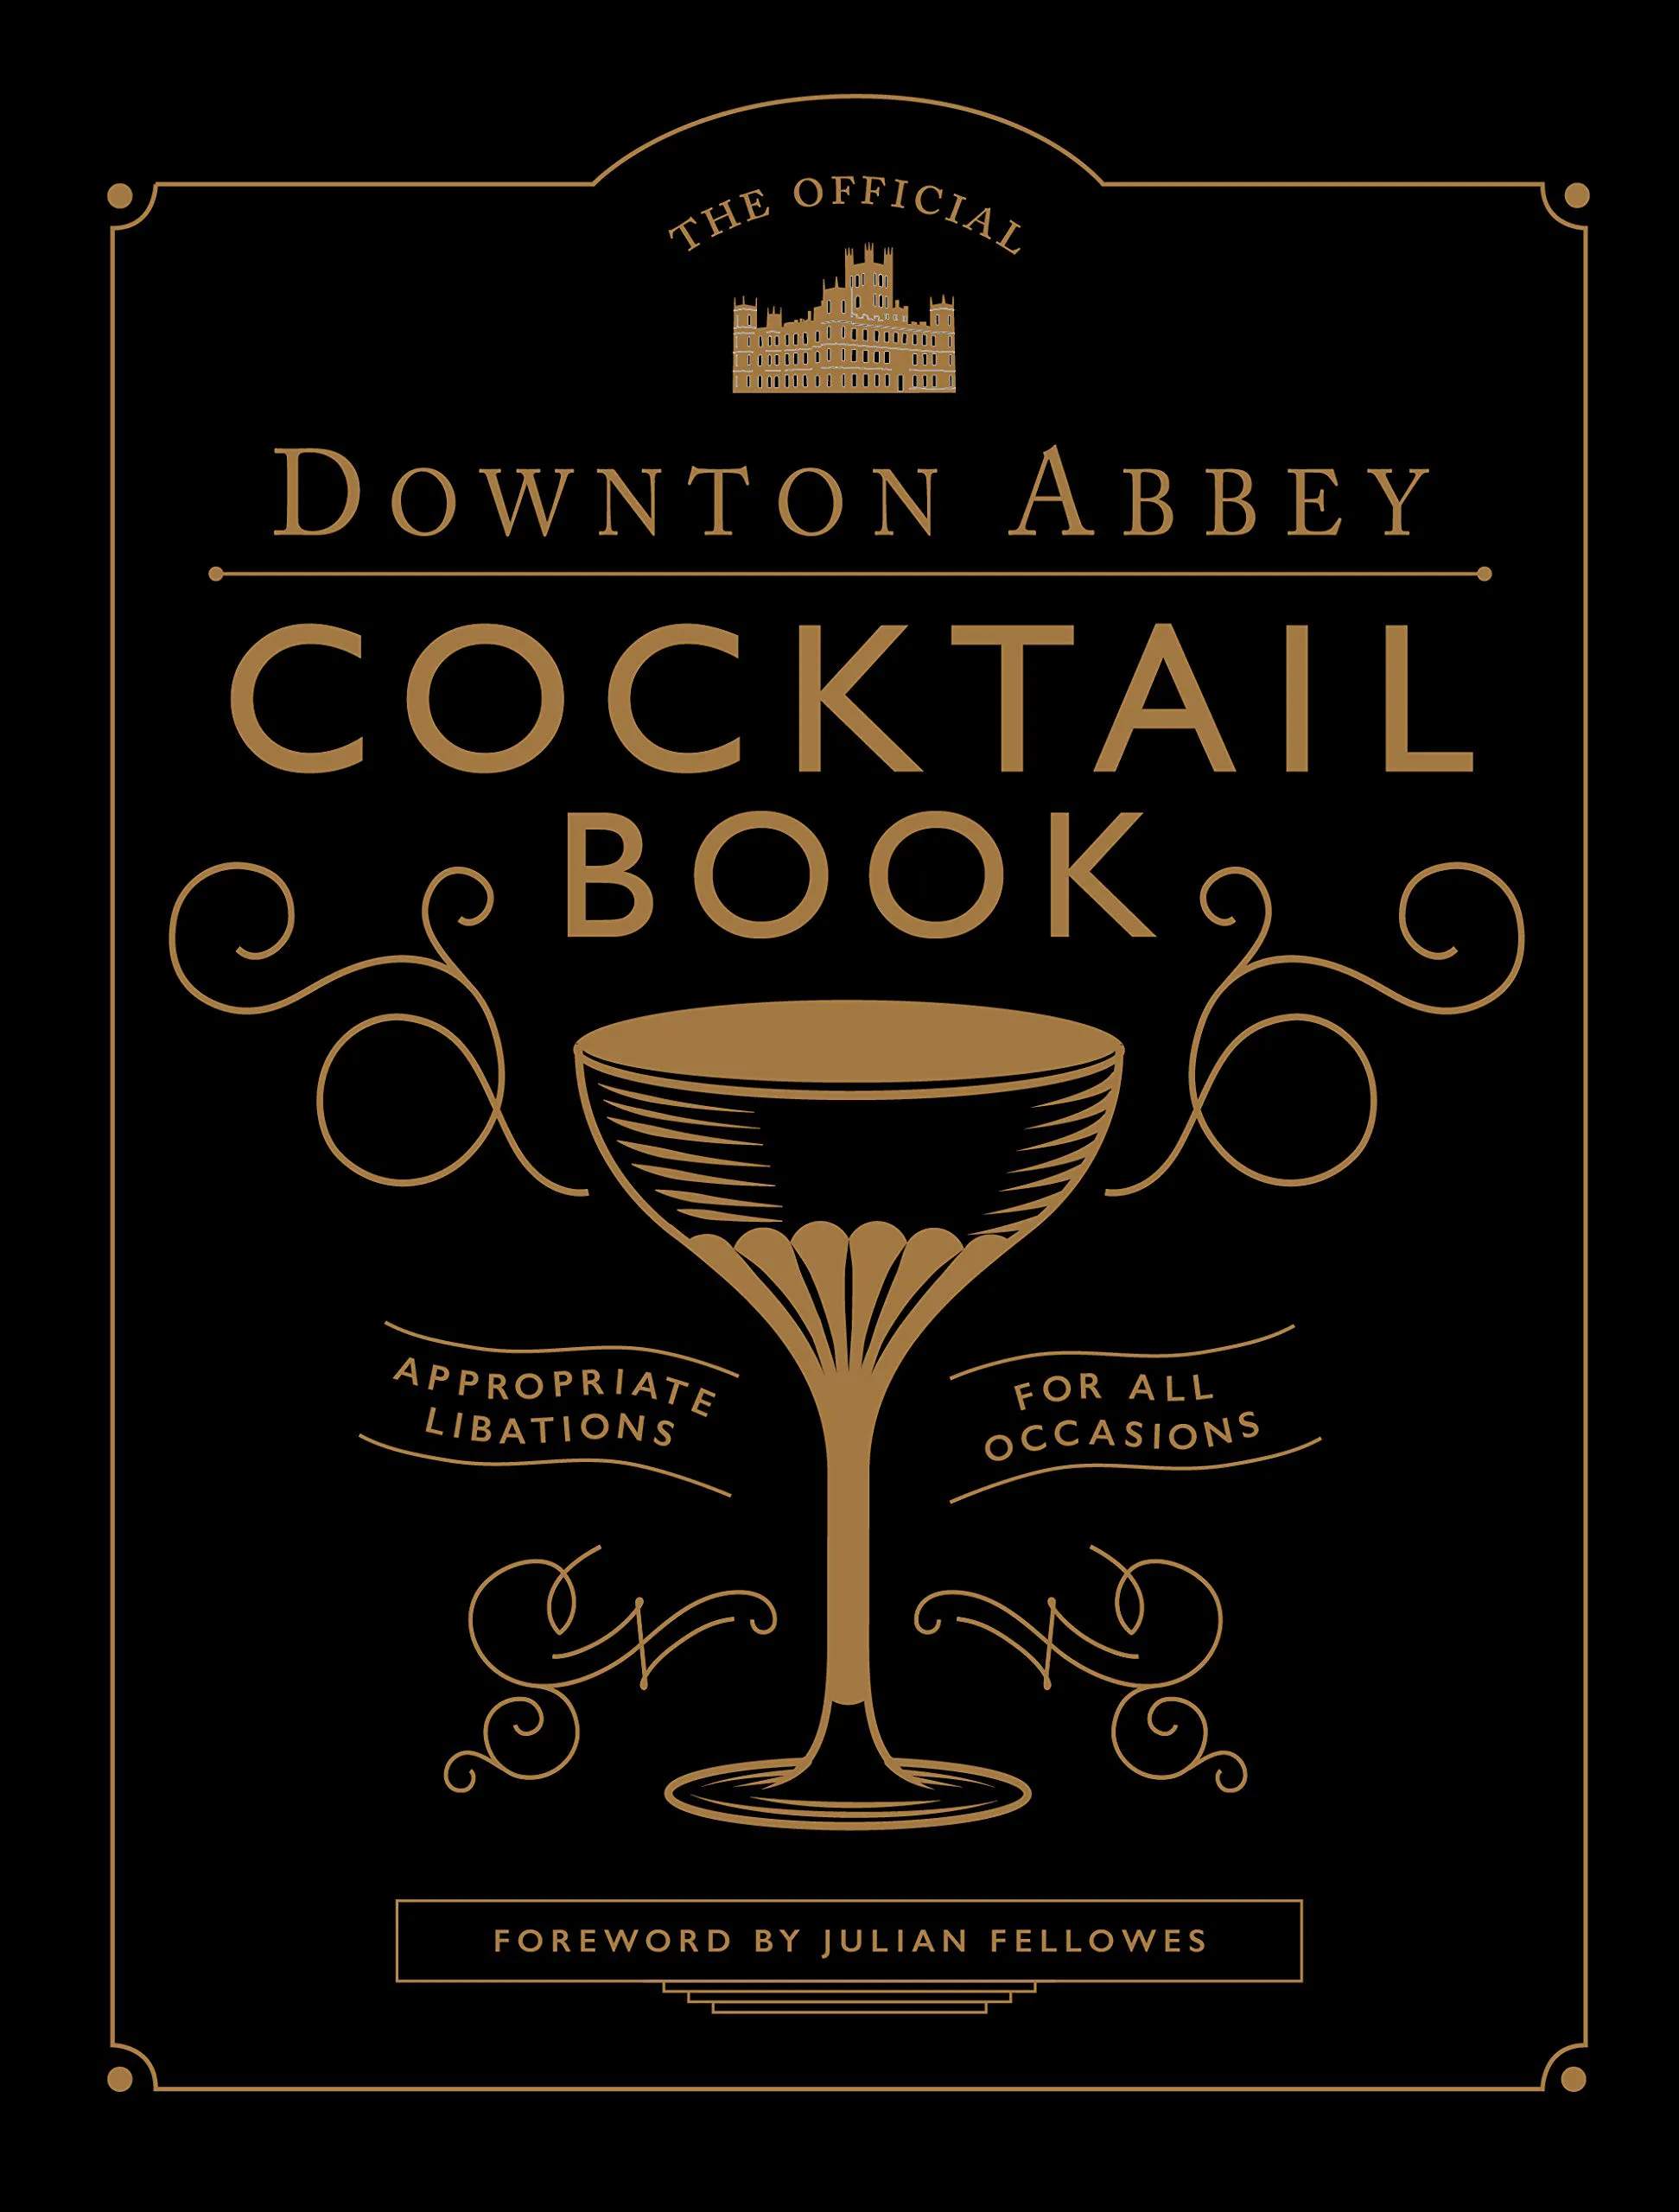 Downton Abbey Cocktail Book kogebøger